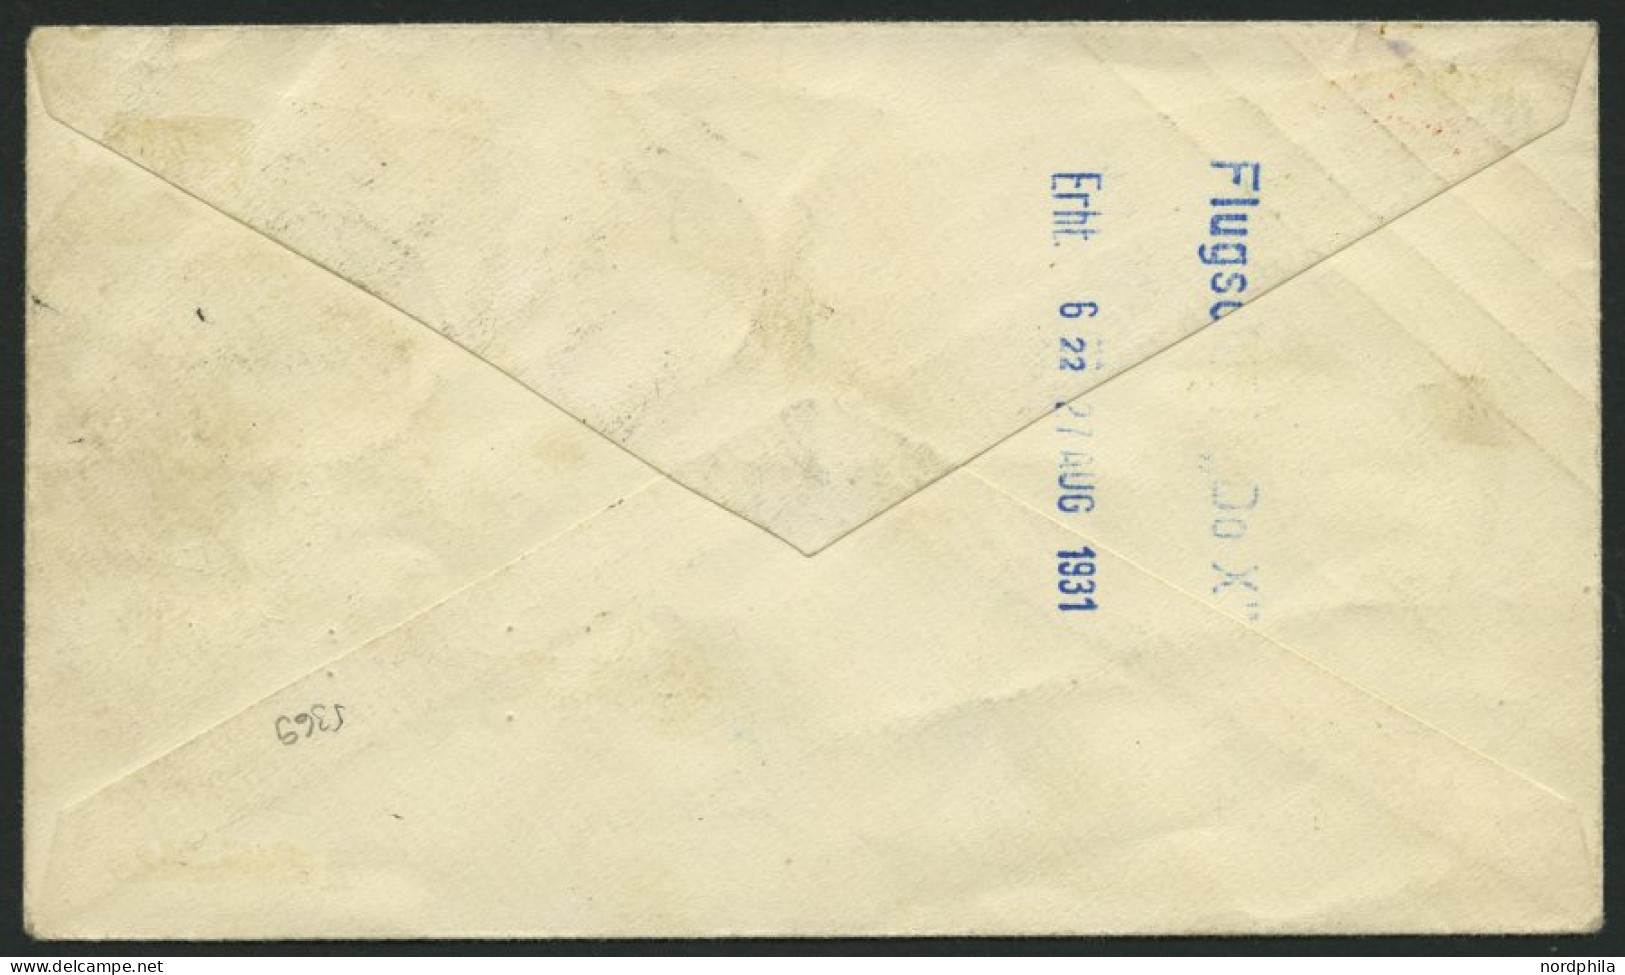 DO-X LUFTPOST DO X2.001.CH BRIEF, 31.08.1931, DO X 2, Postabgabe Trimmis, Blauer Zweikreiser VOLO DI COLLAUDO, Prachtbri - Premiers Vols